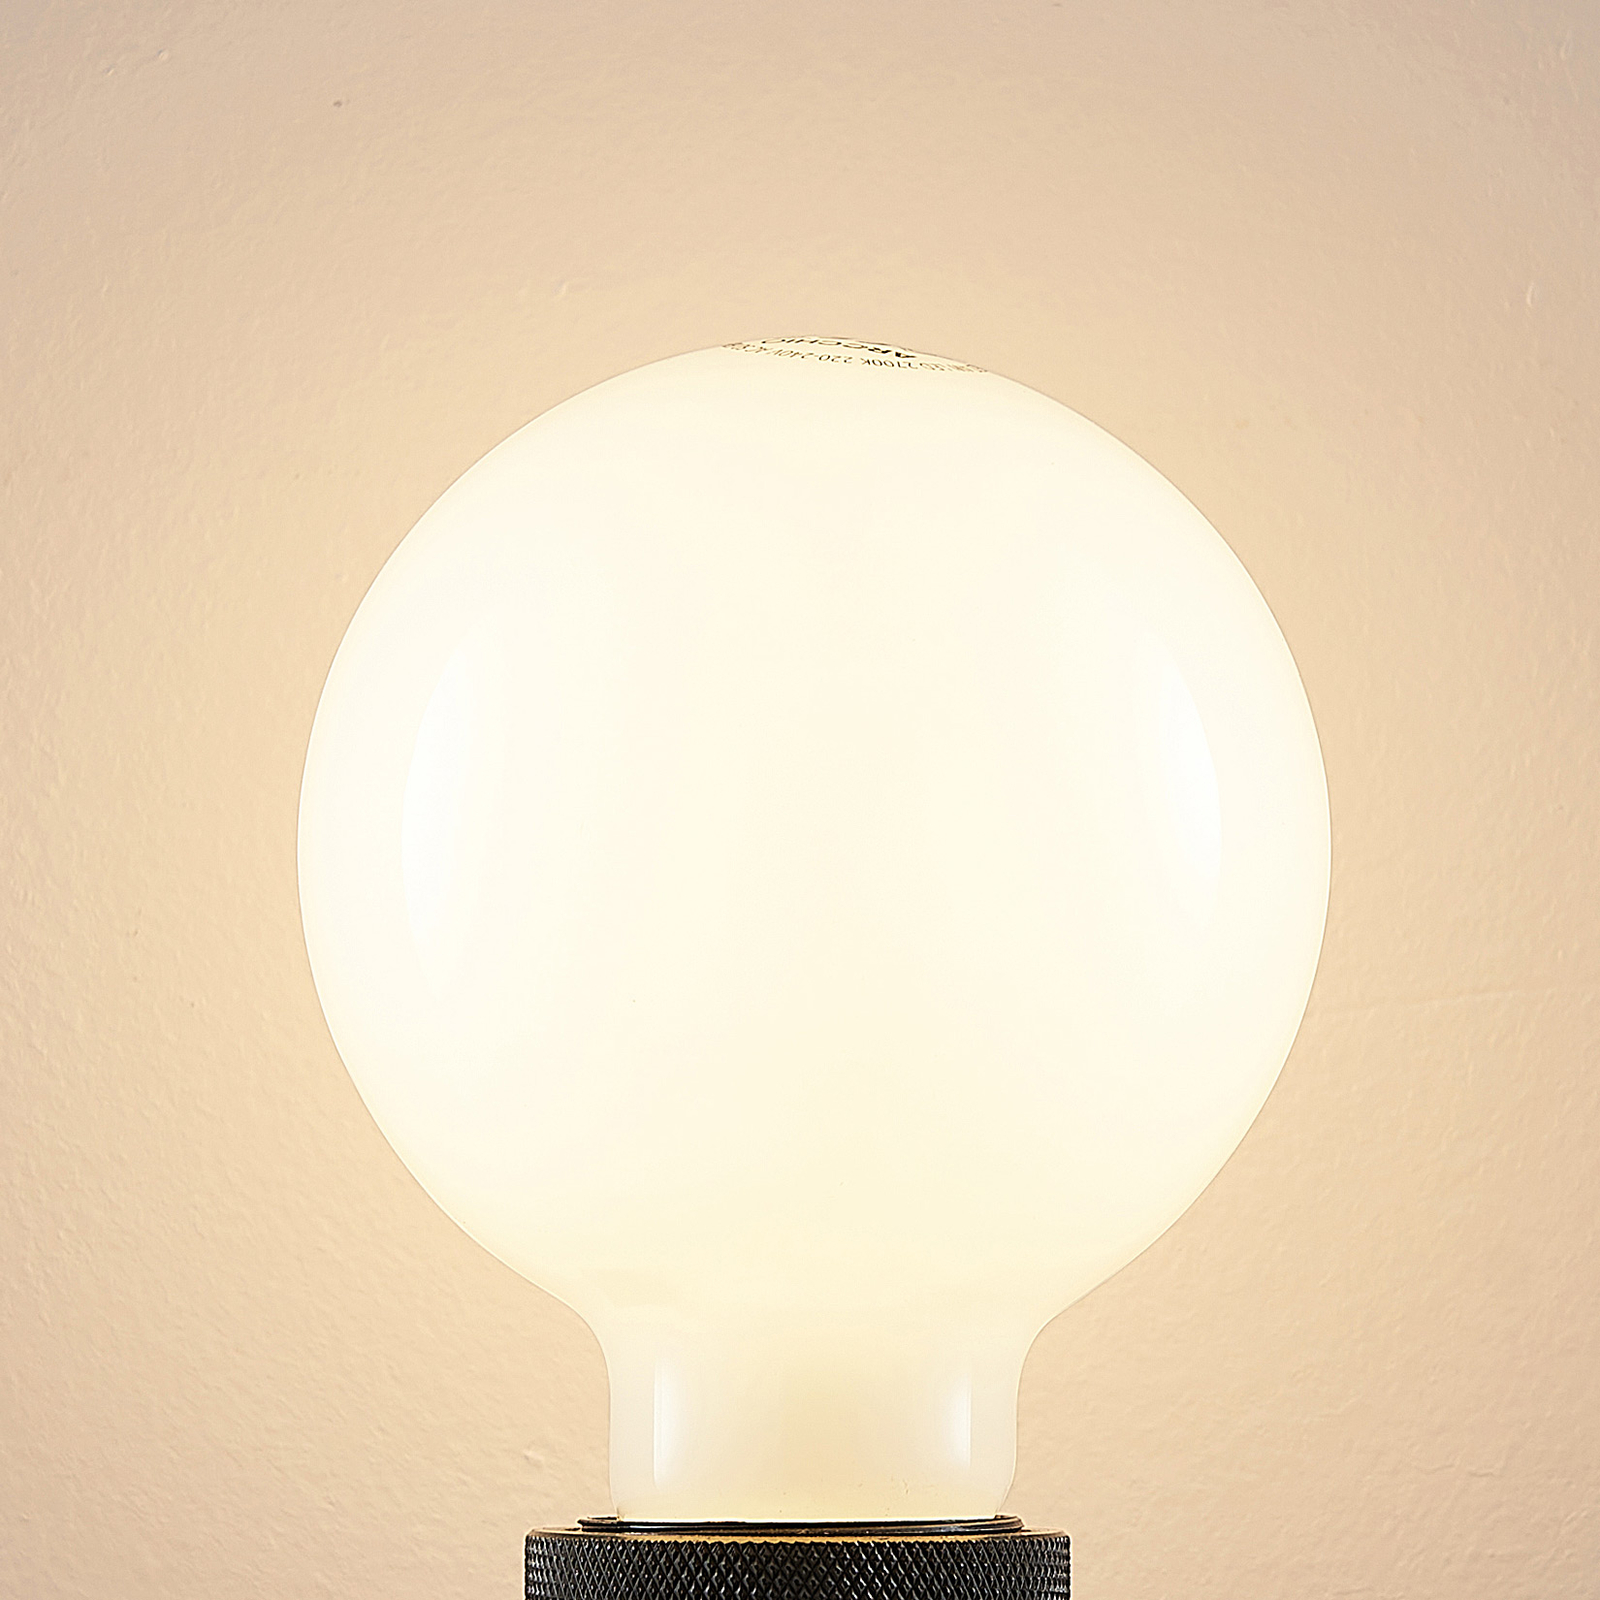 LED lamp E27 4W 2.700K G95 bollamp dimbaar, opaal